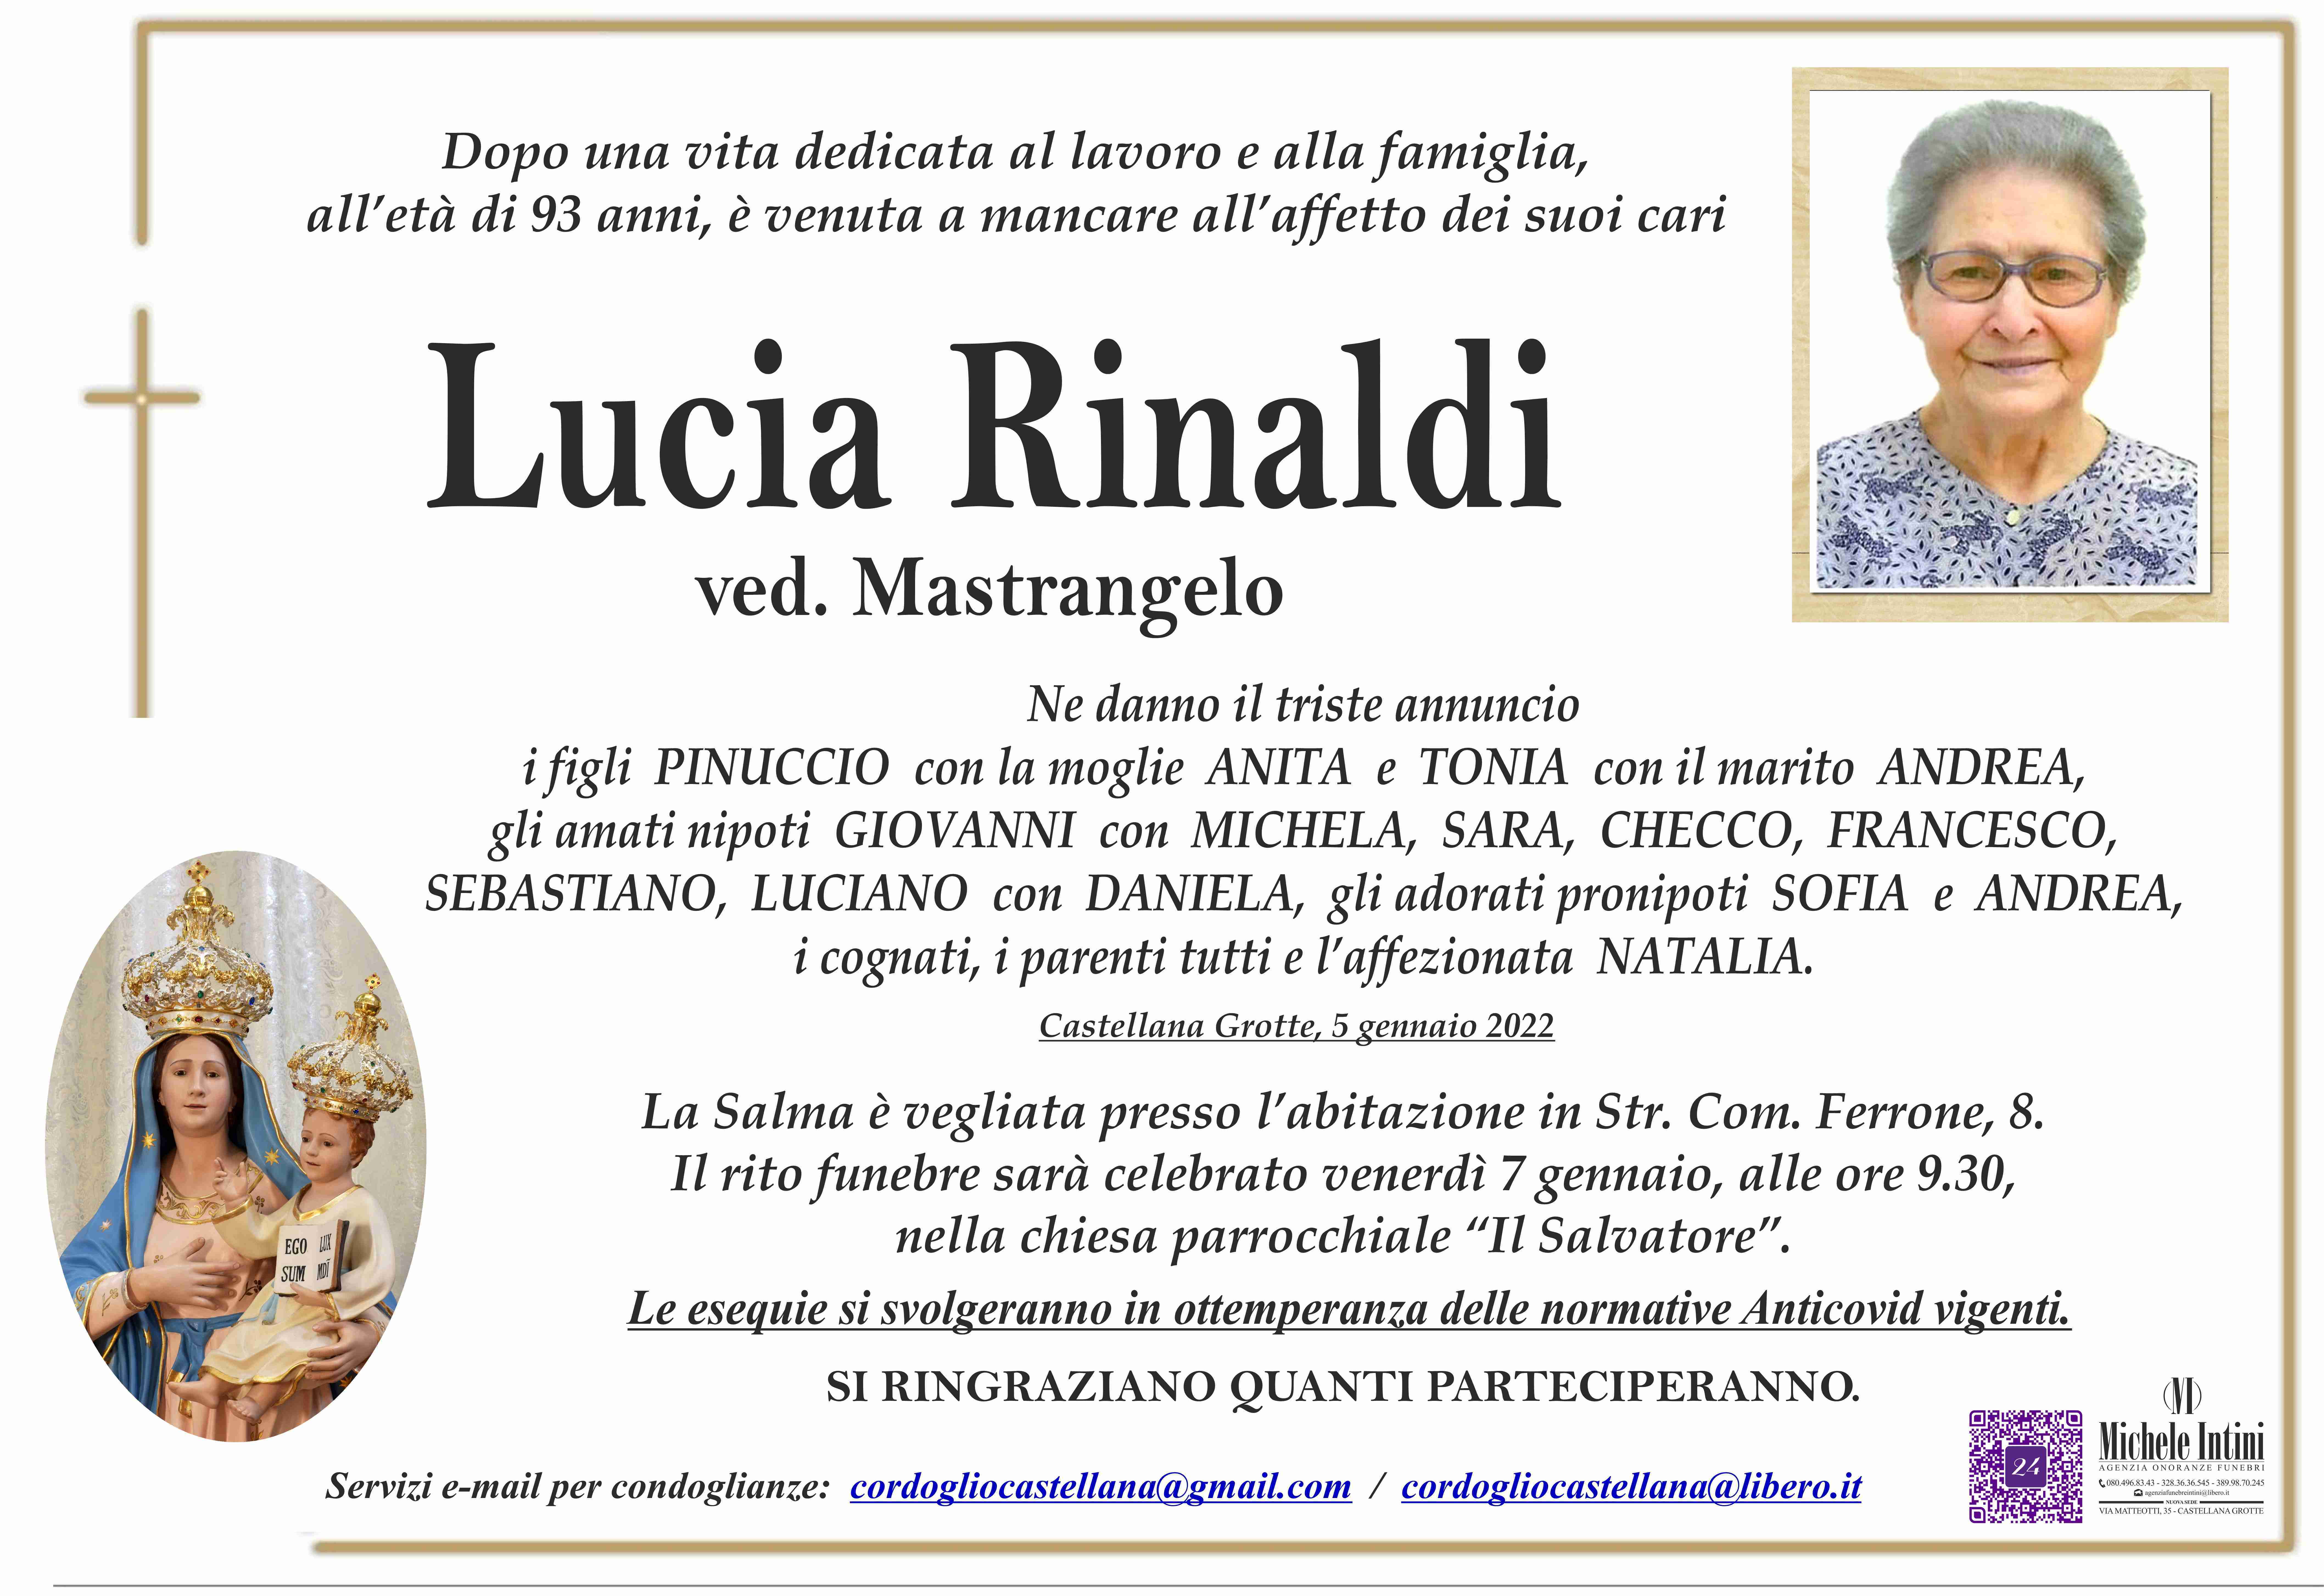 Lucia Rinaldi